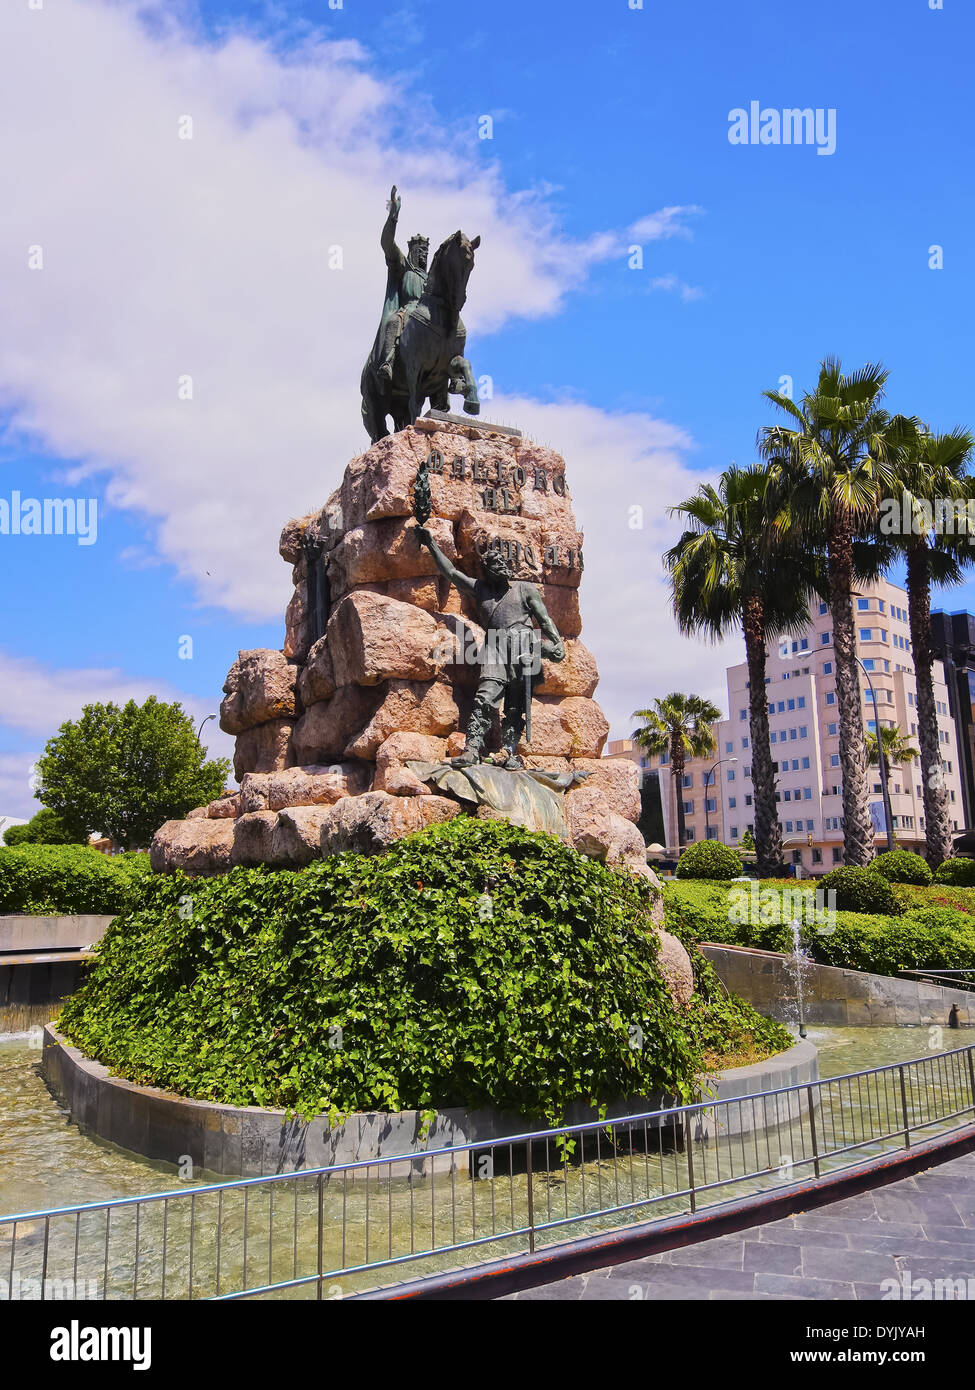 Monumento a cavallo sulla Plaza de Espana a Palma di Maiorca, isole Baleari, Spagna Foto Stock